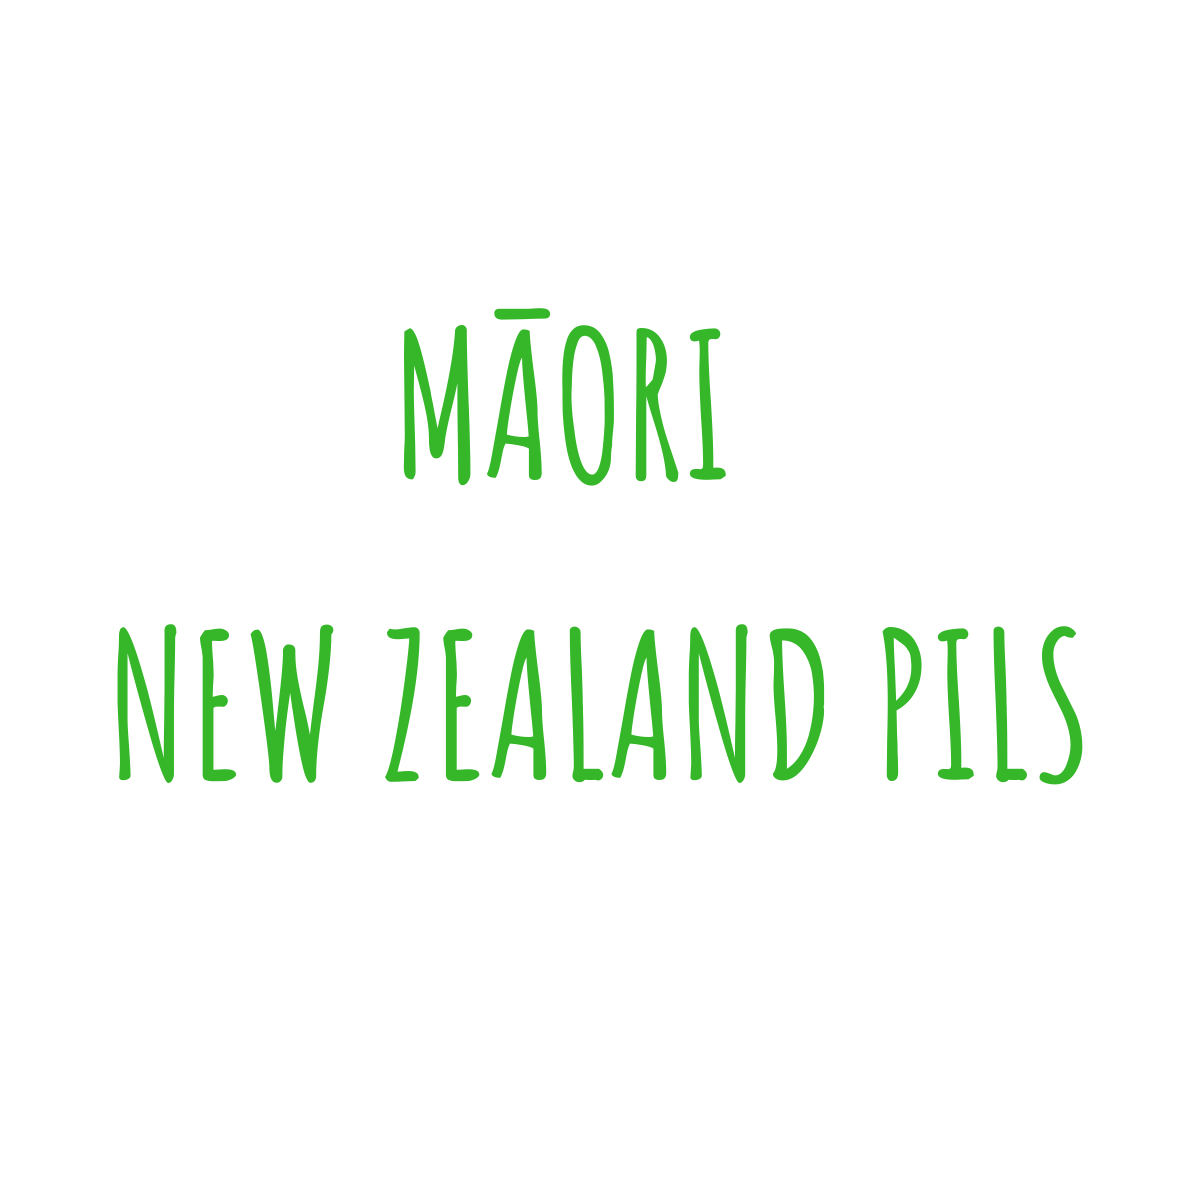 Māori - New Zealand Pils